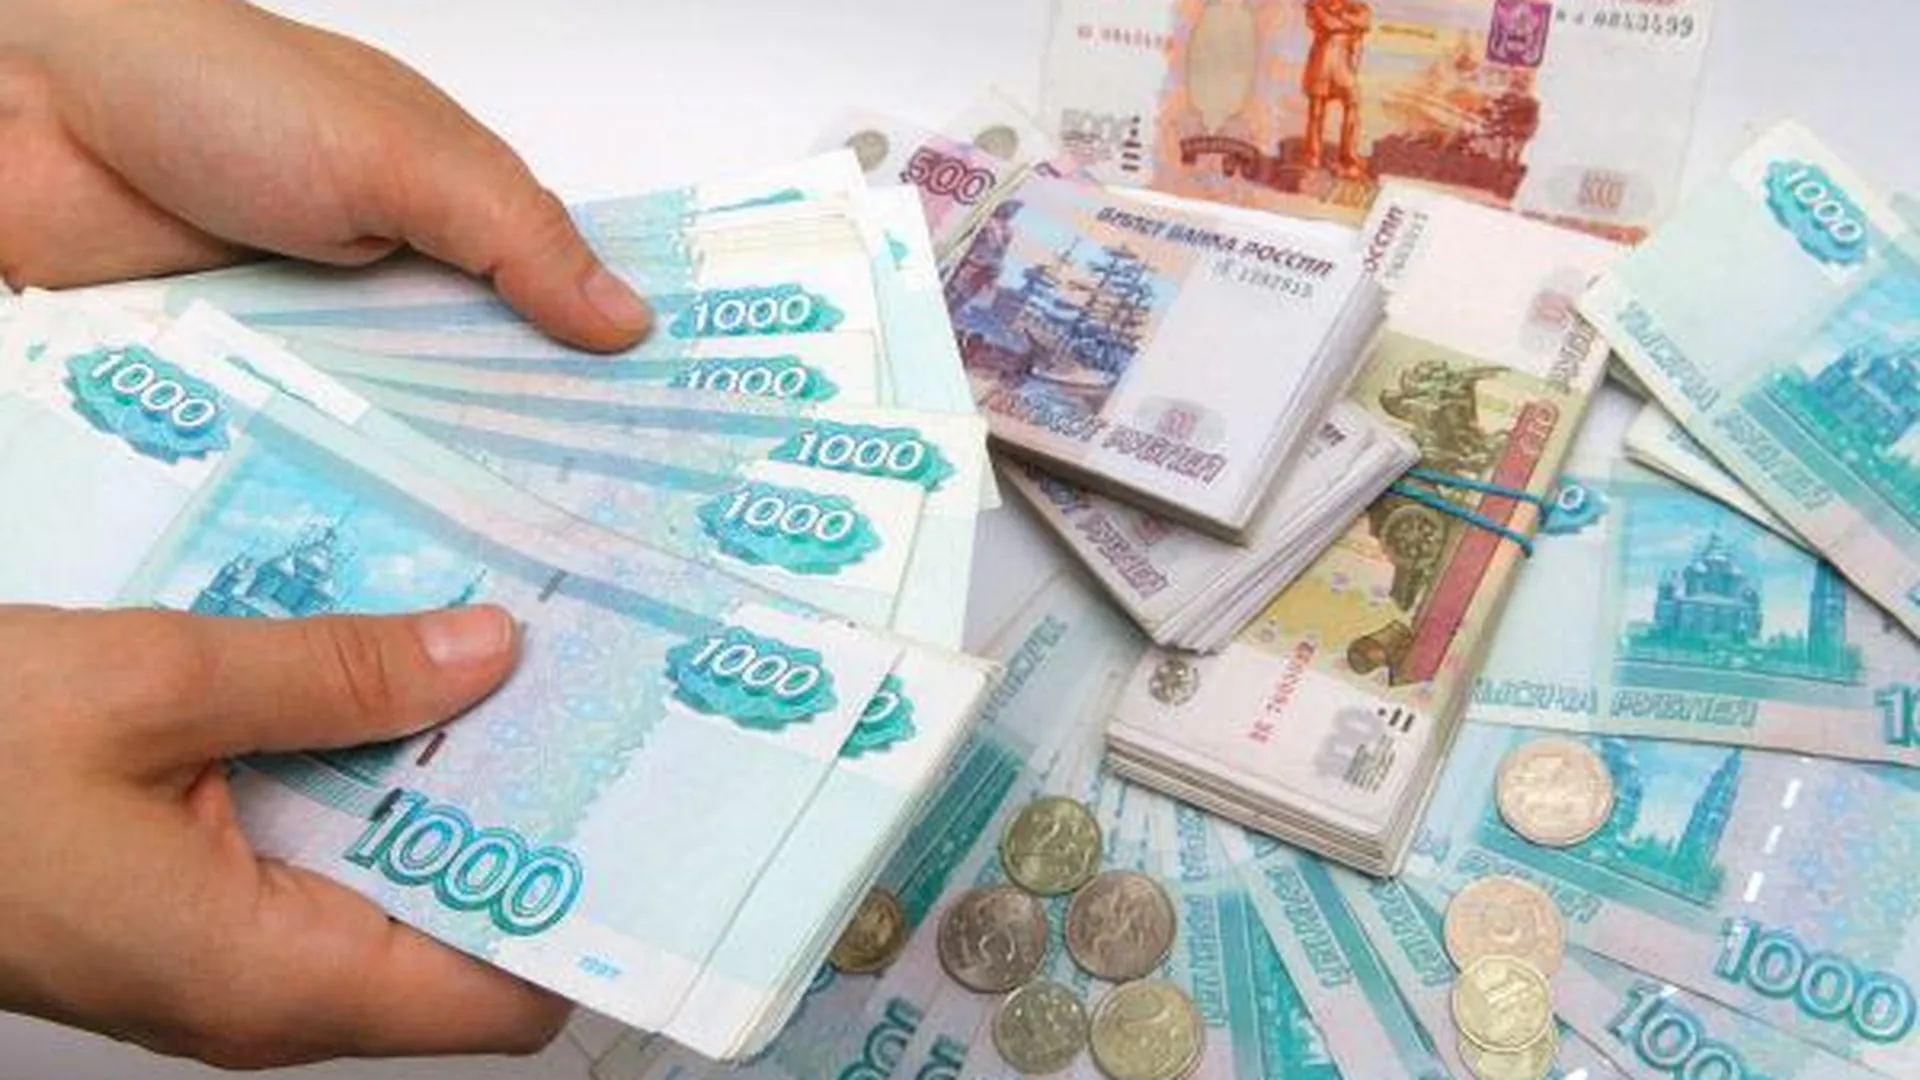 Старик лишился 270 тыс рублей, доверившись лжегазовщику в Коломне